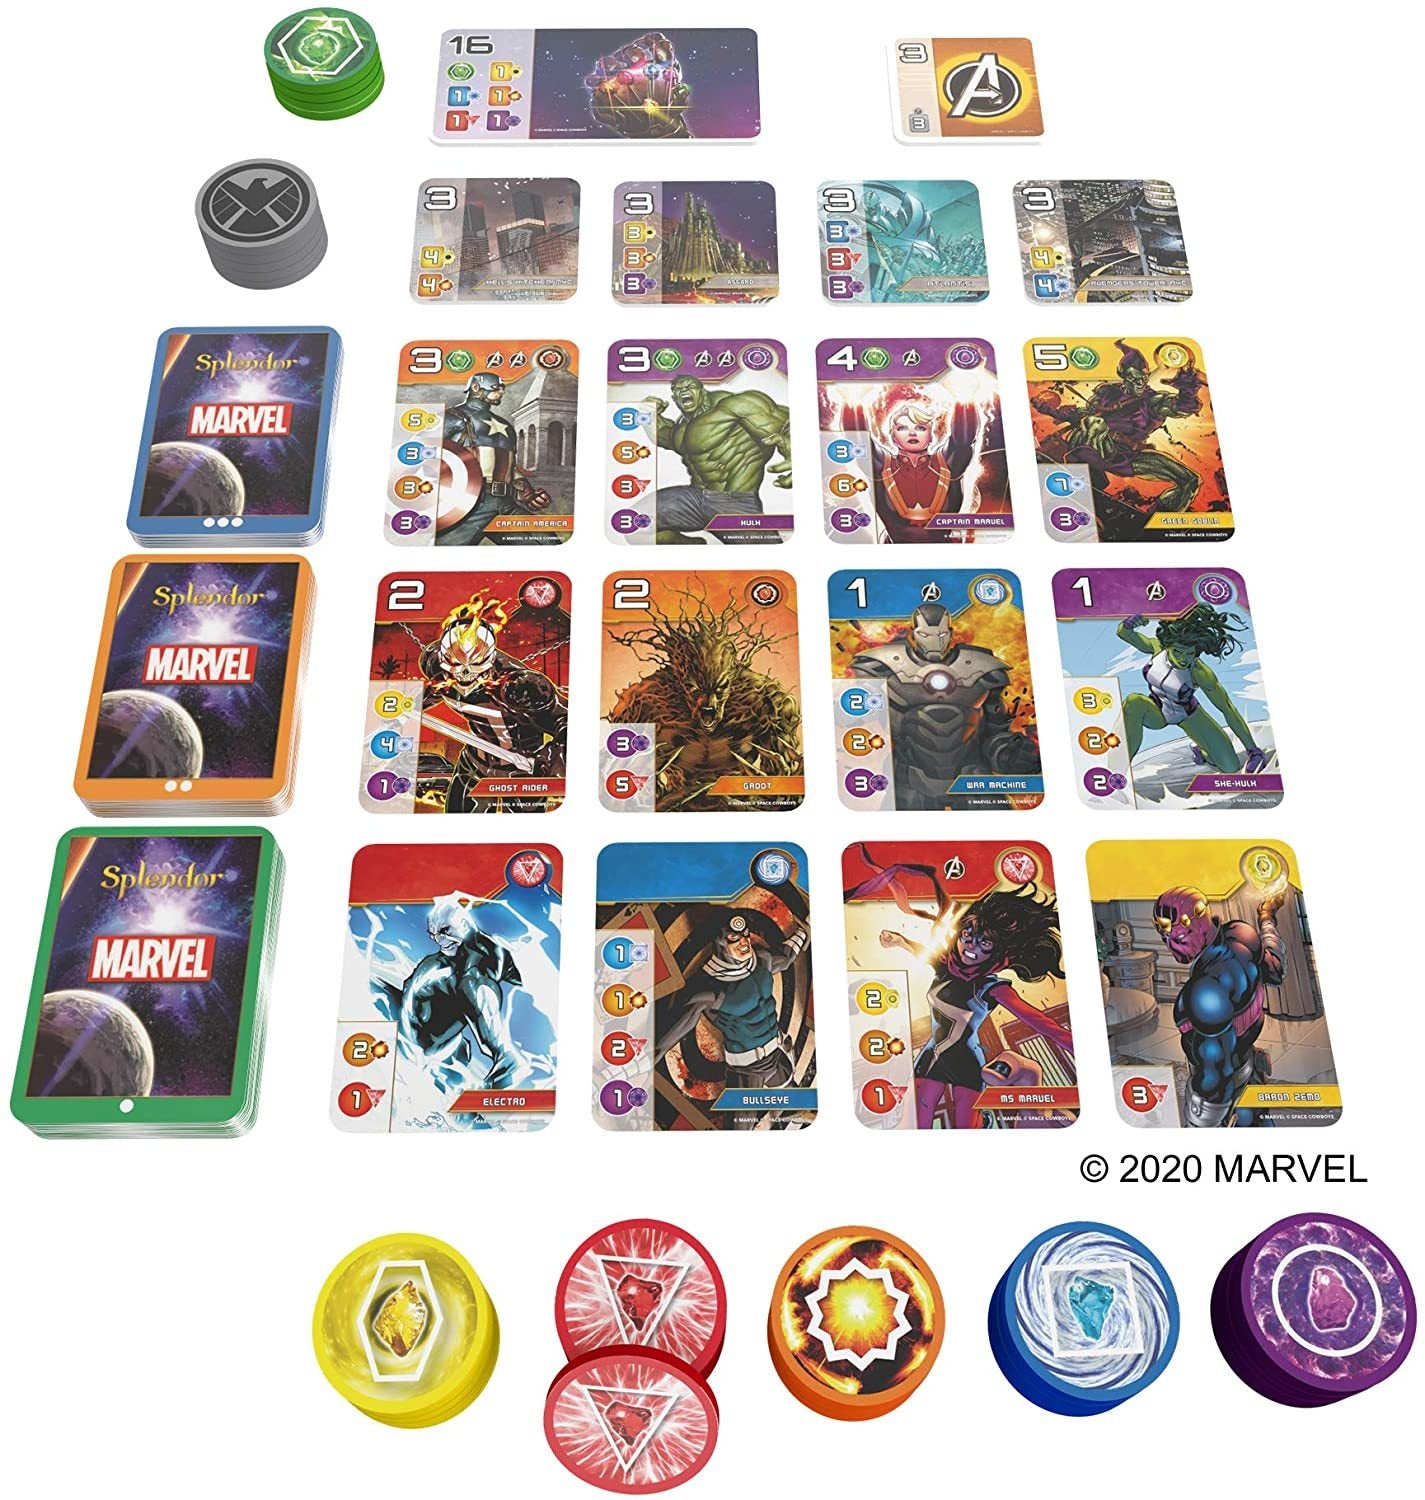 Splendor Marvel (Card Game)